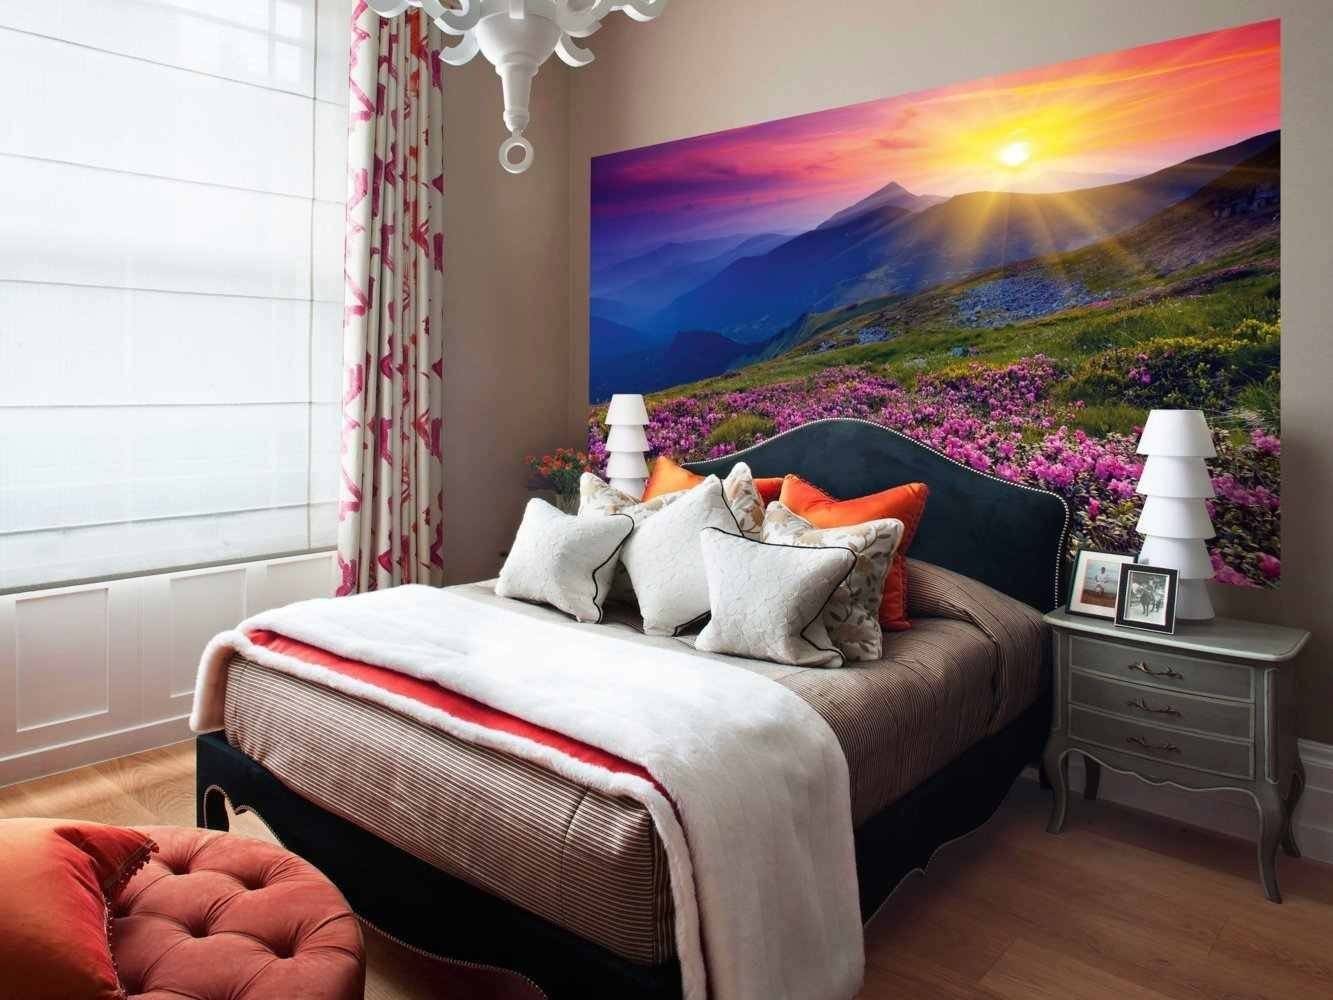 Как выбрать фотообои на стену в кухню или гостиную, в спальню над кроватью, для маленькой комнаты, как правильно сочетать цвета и сюжет полотен с интерьером?